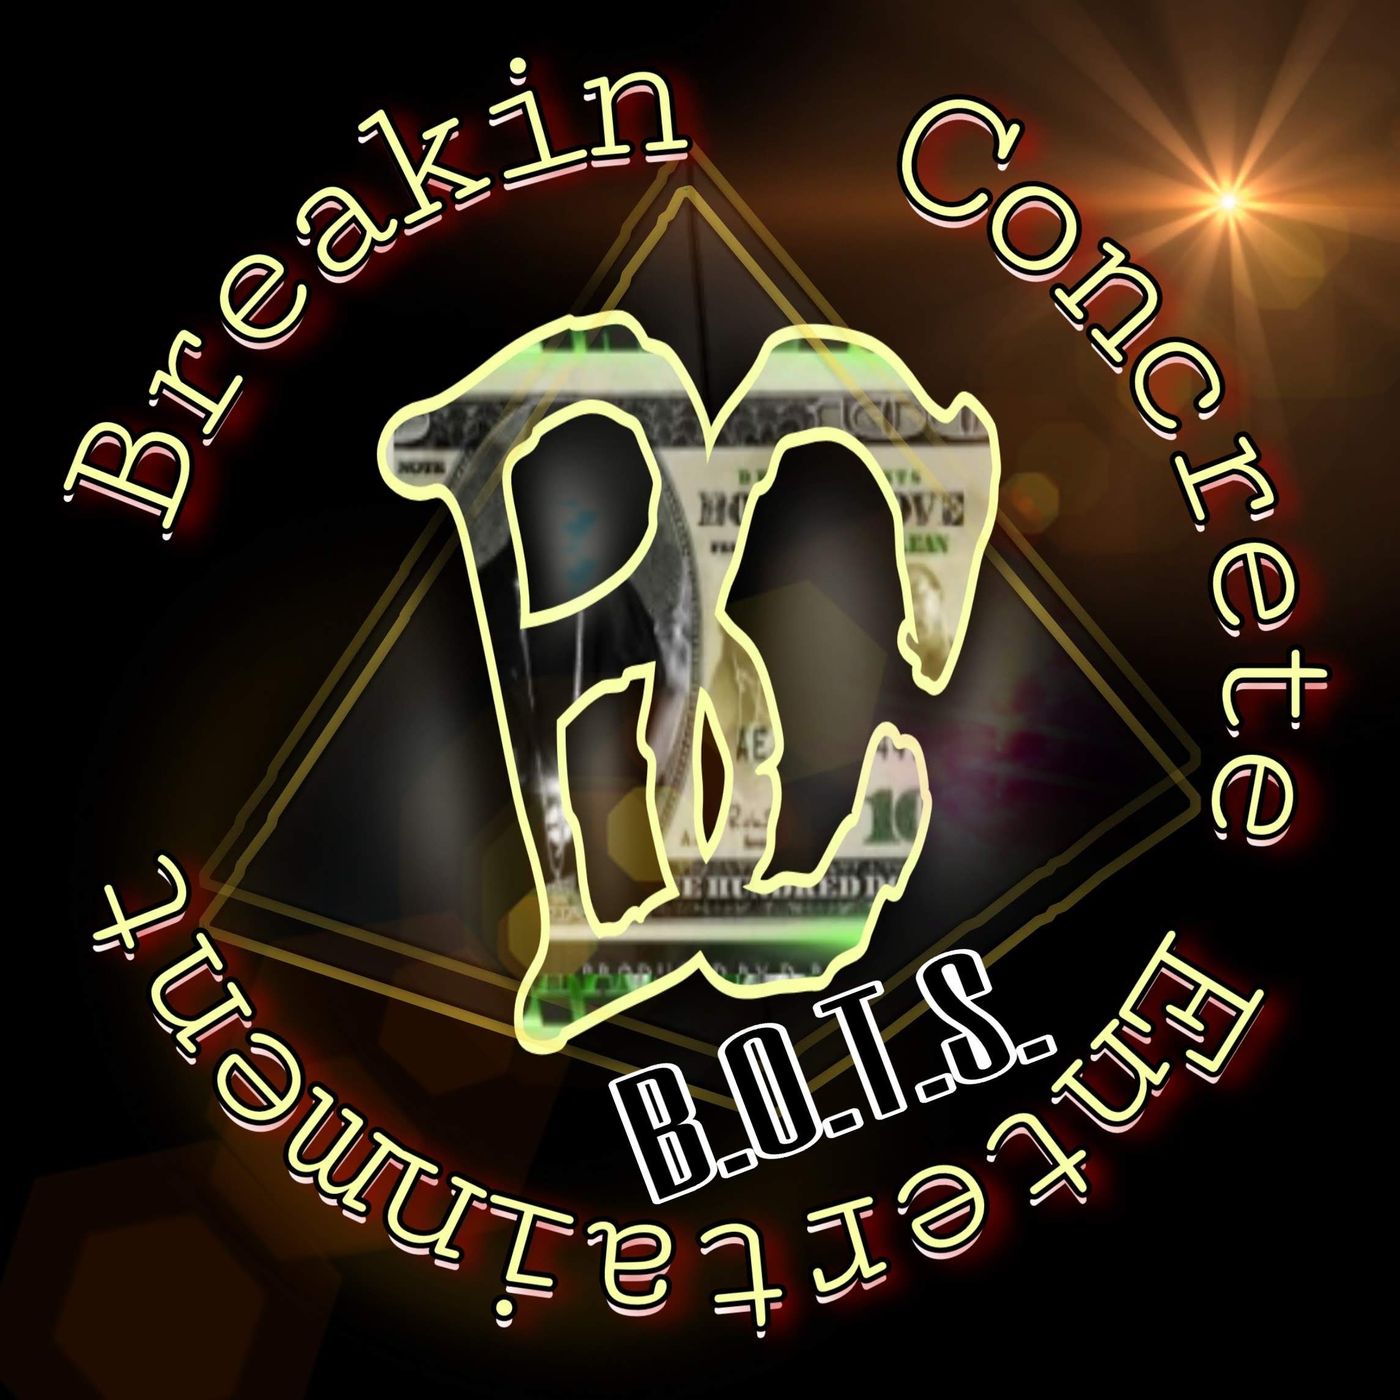 Breakin’ Concrete Back On Da Streetz